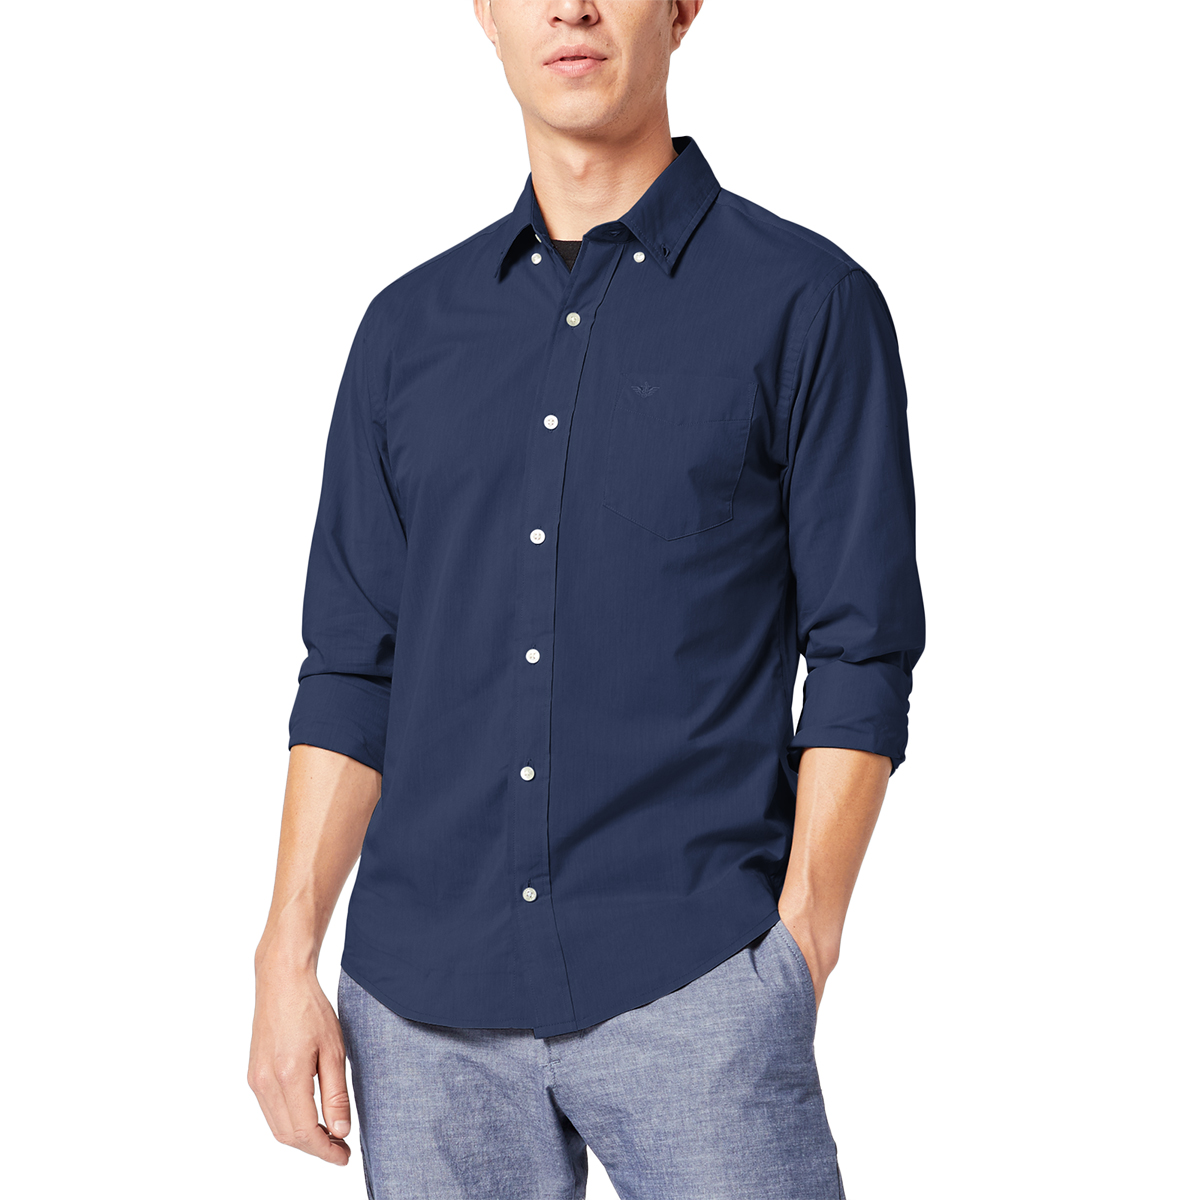 Dockers Men's Comfort Flex Button Down Long-Sleeve Shirt